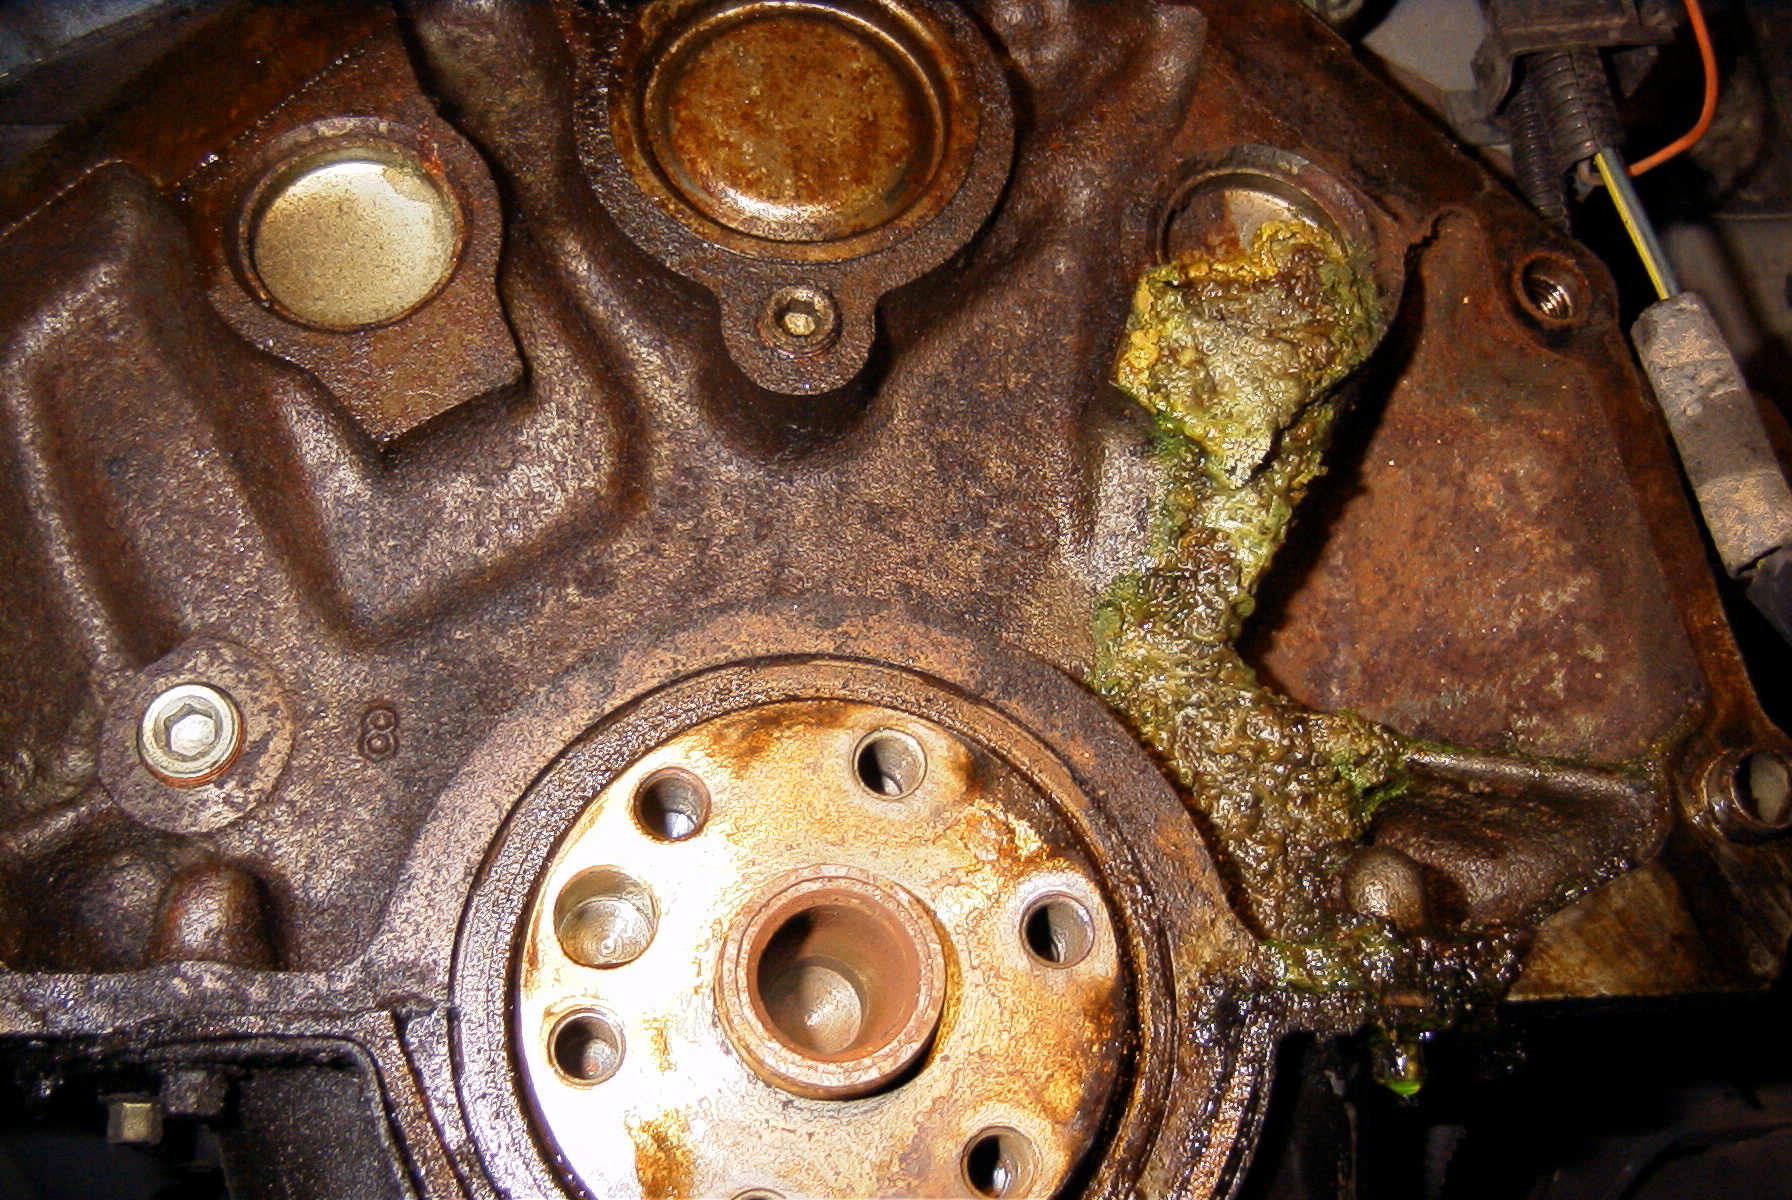 1997 Ford taurus radiator drain plug #1